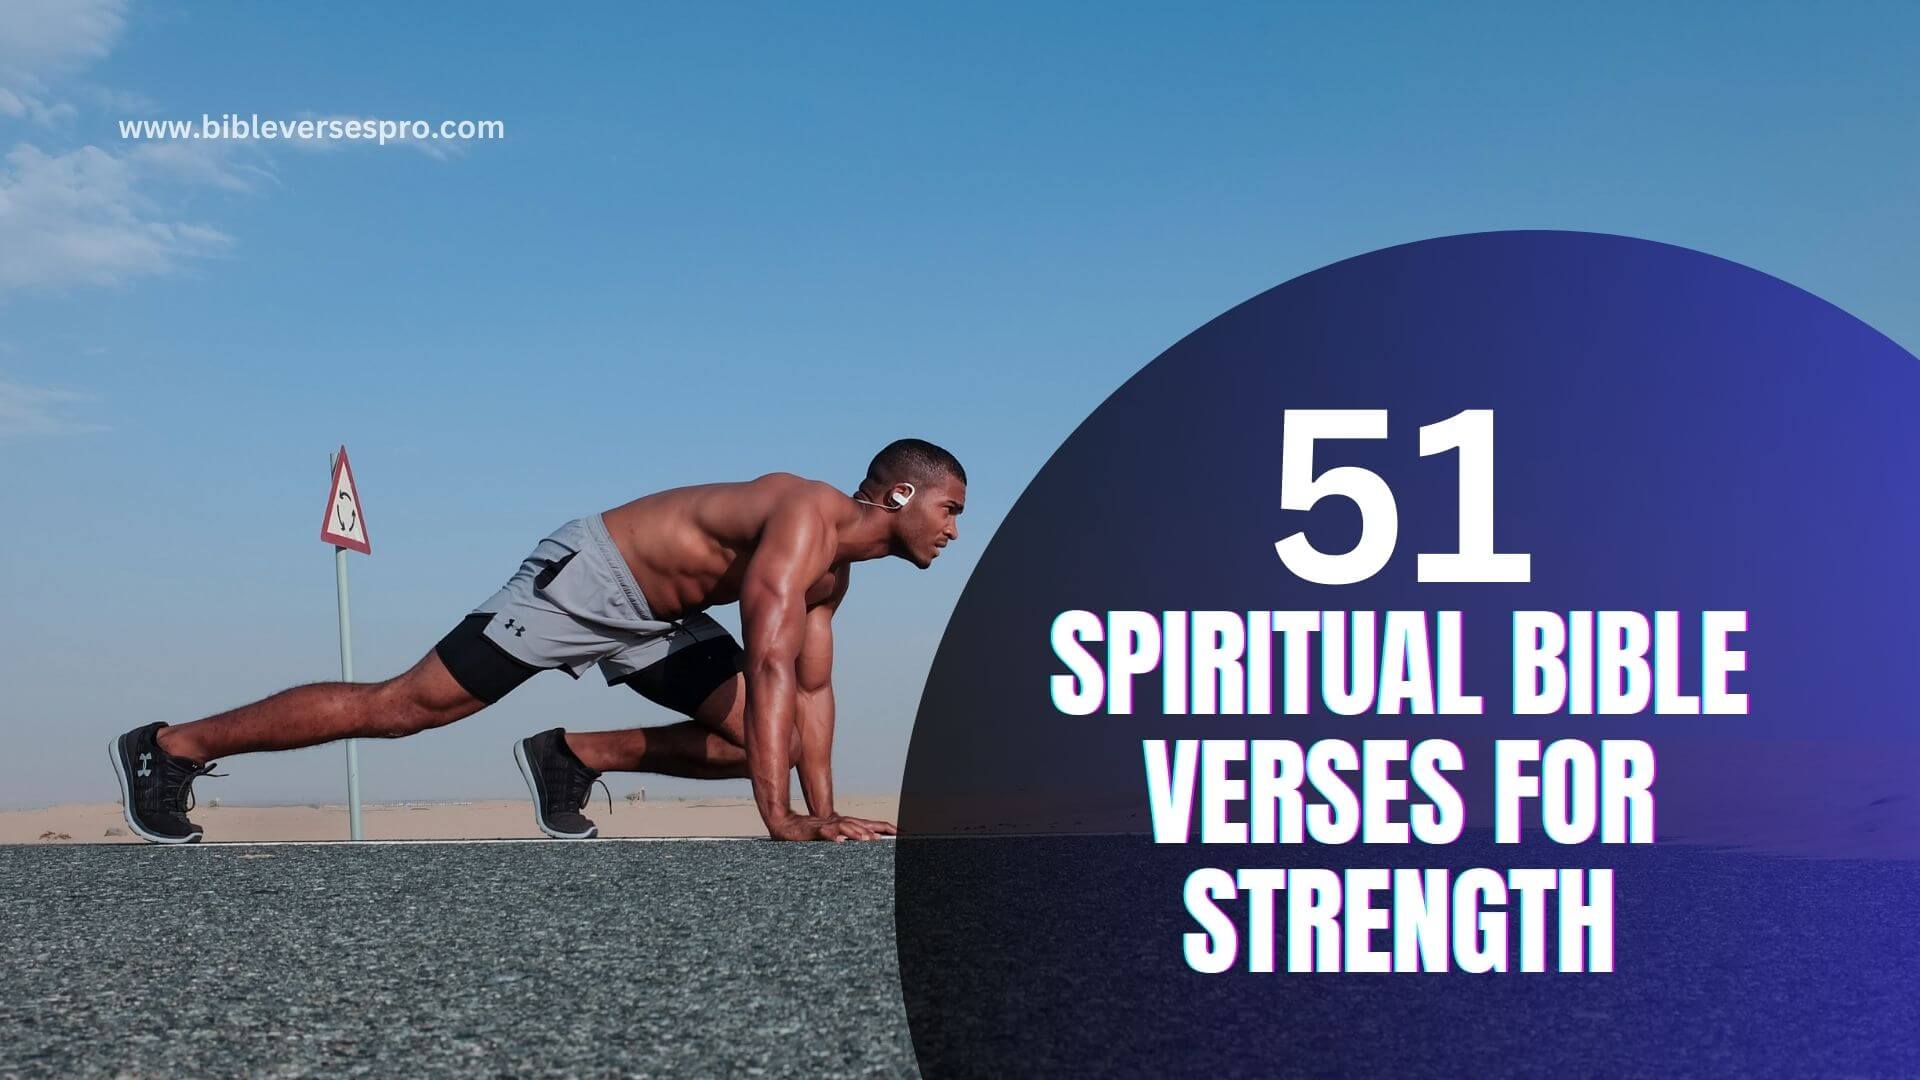 SPIRITUAL BIBLE VERSES FOR STRENGTH